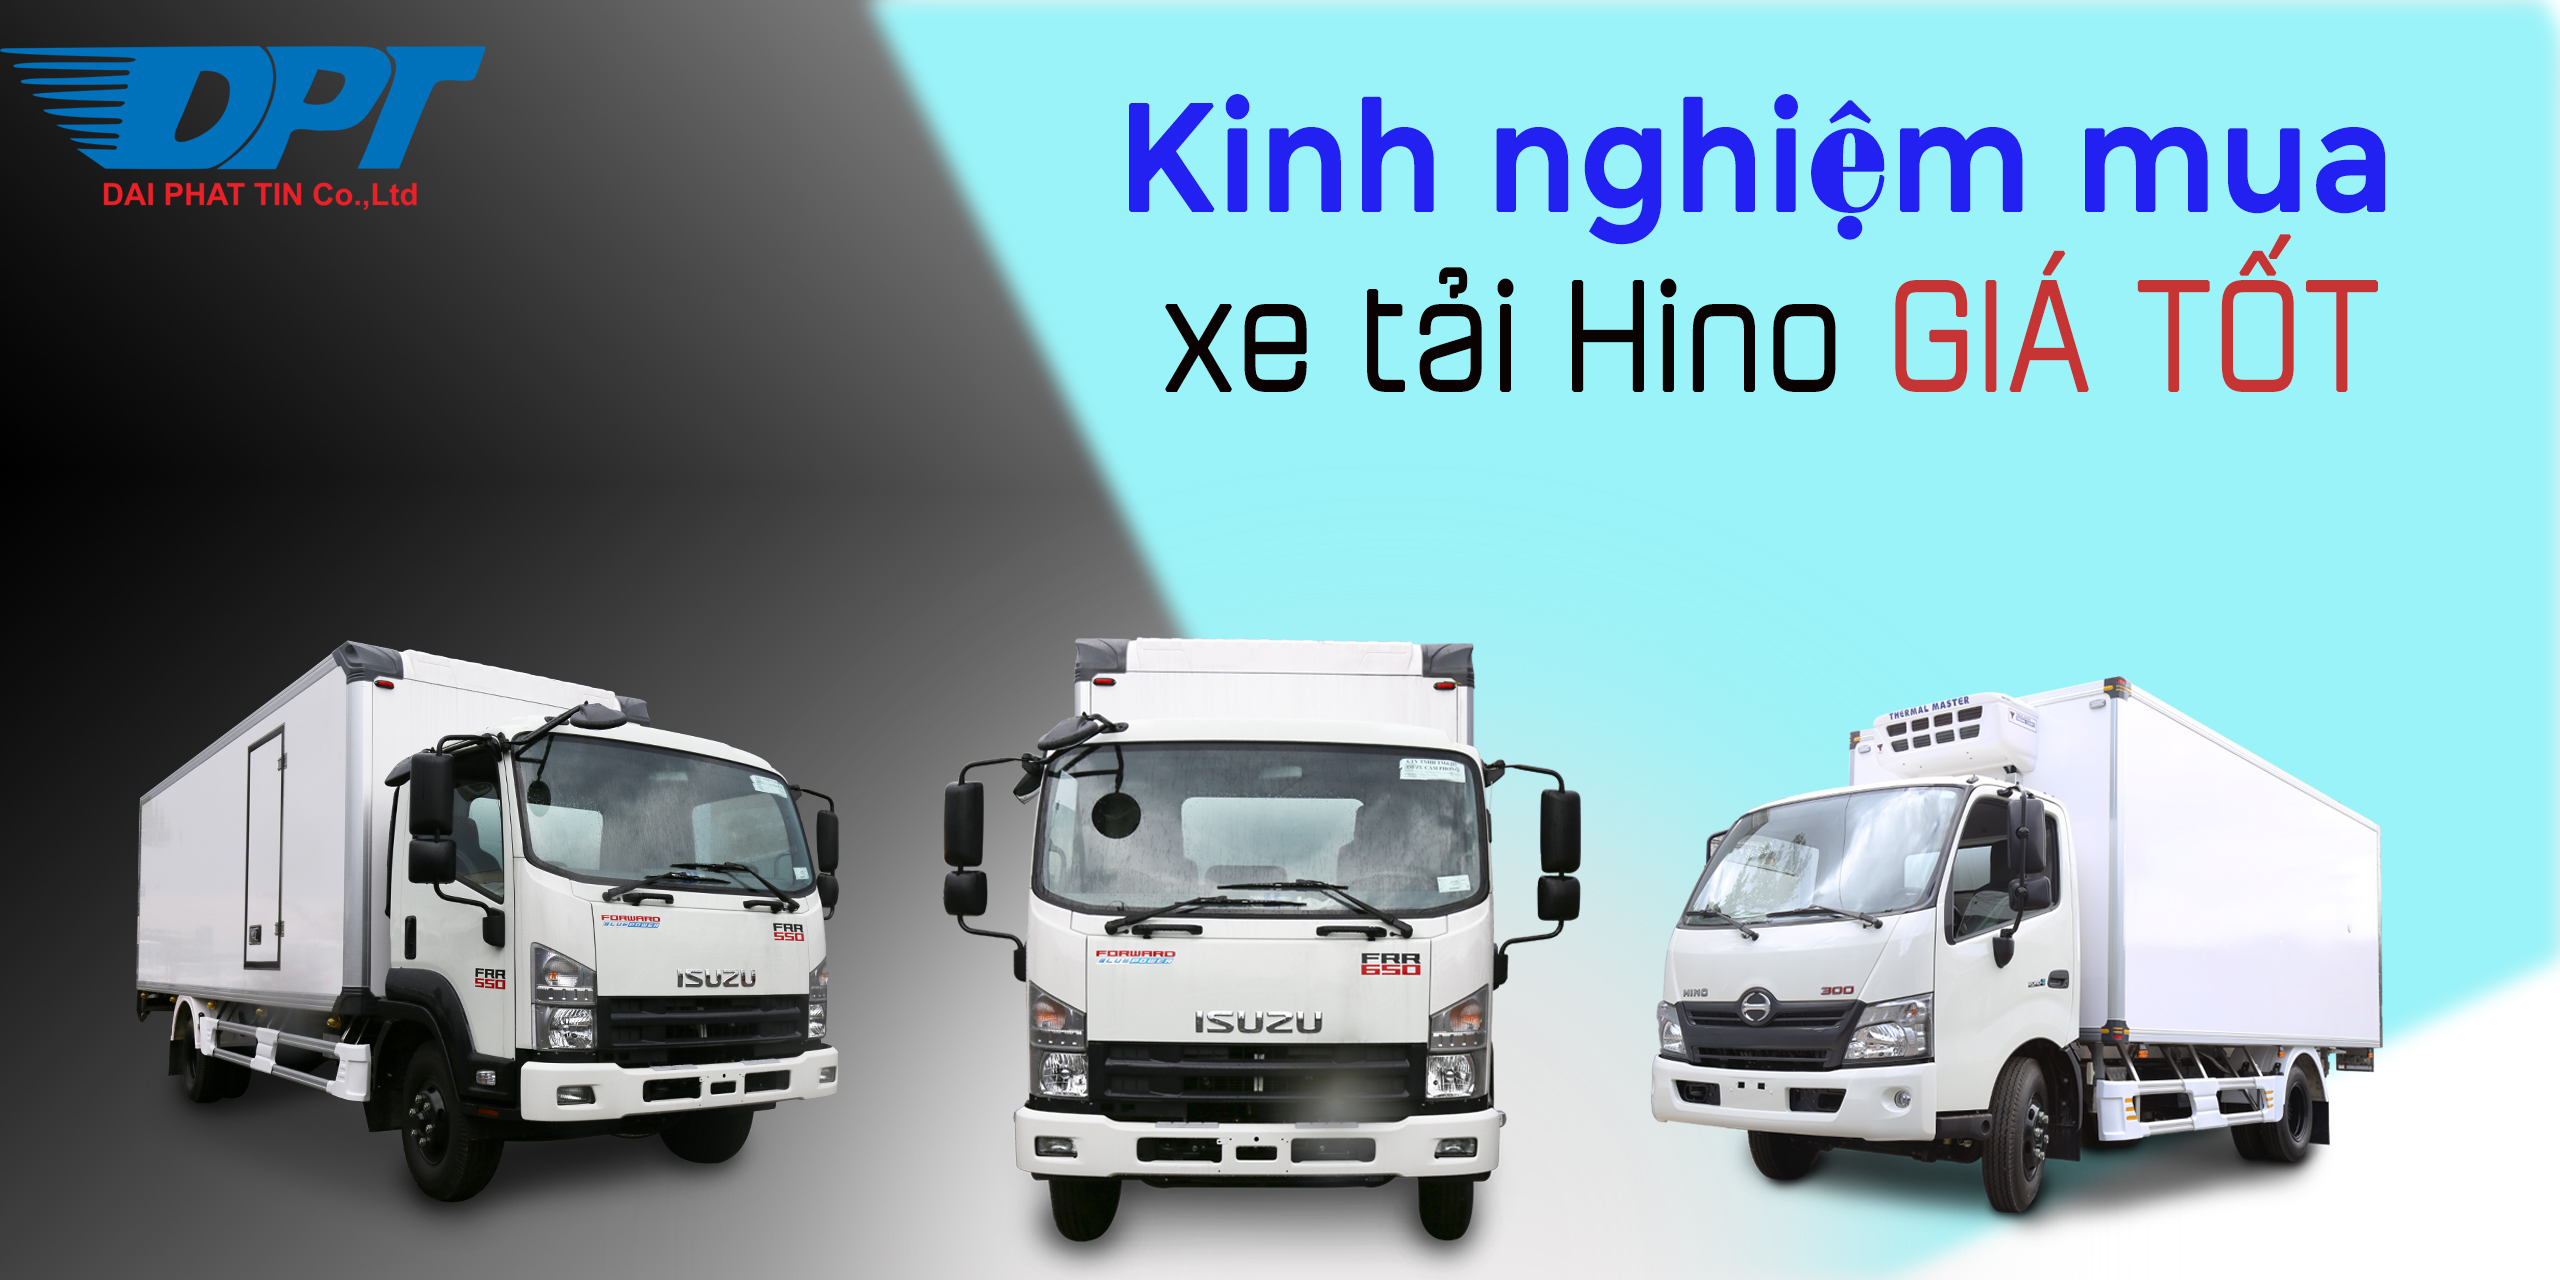 Kinh nghiệm mua xe tải Hino giá tốt nhất mà khách hàng cần biết